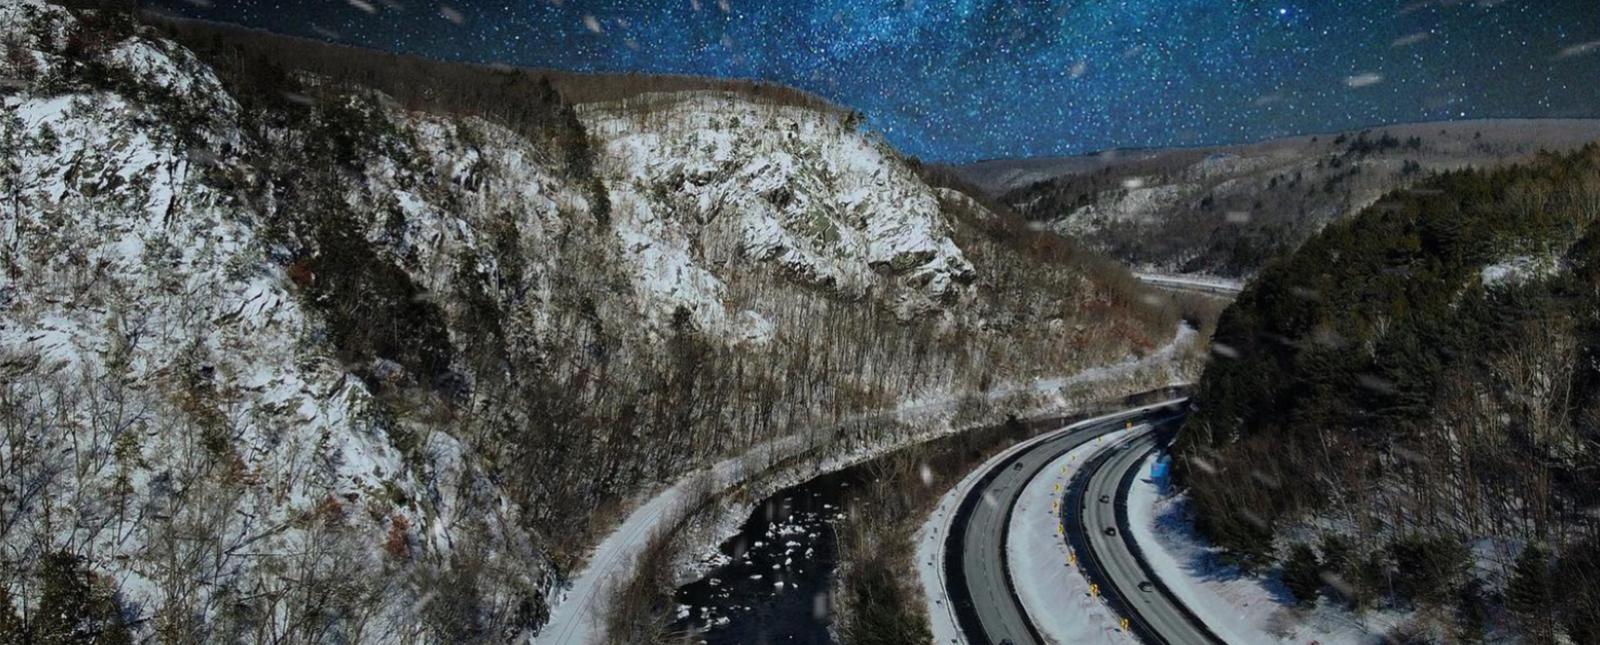 Carretera que atraviesa montañas nevadas de noche (Instagram@dronesoverthevalley)